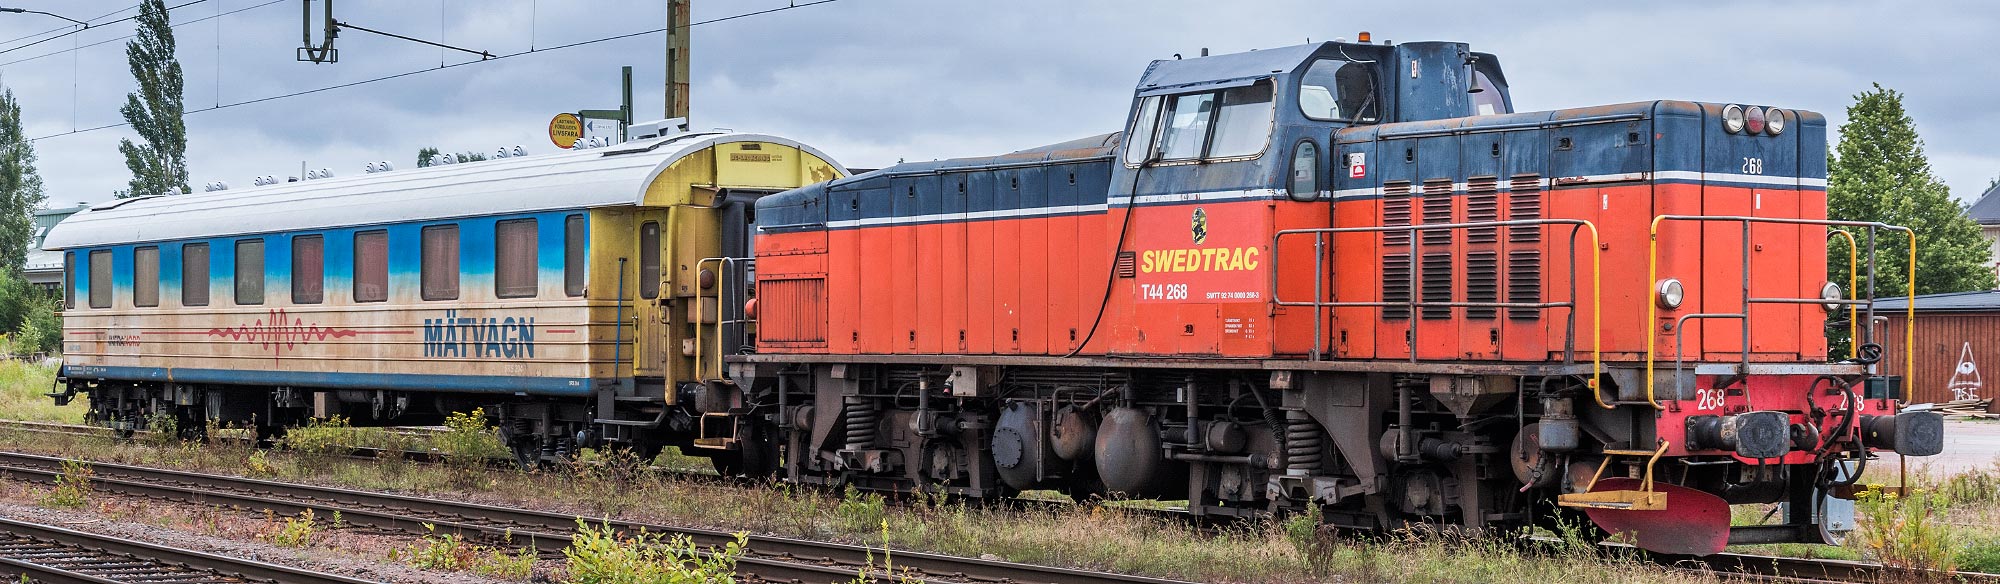 Swedtrac T44 268 med mätvagn i Kil 2015